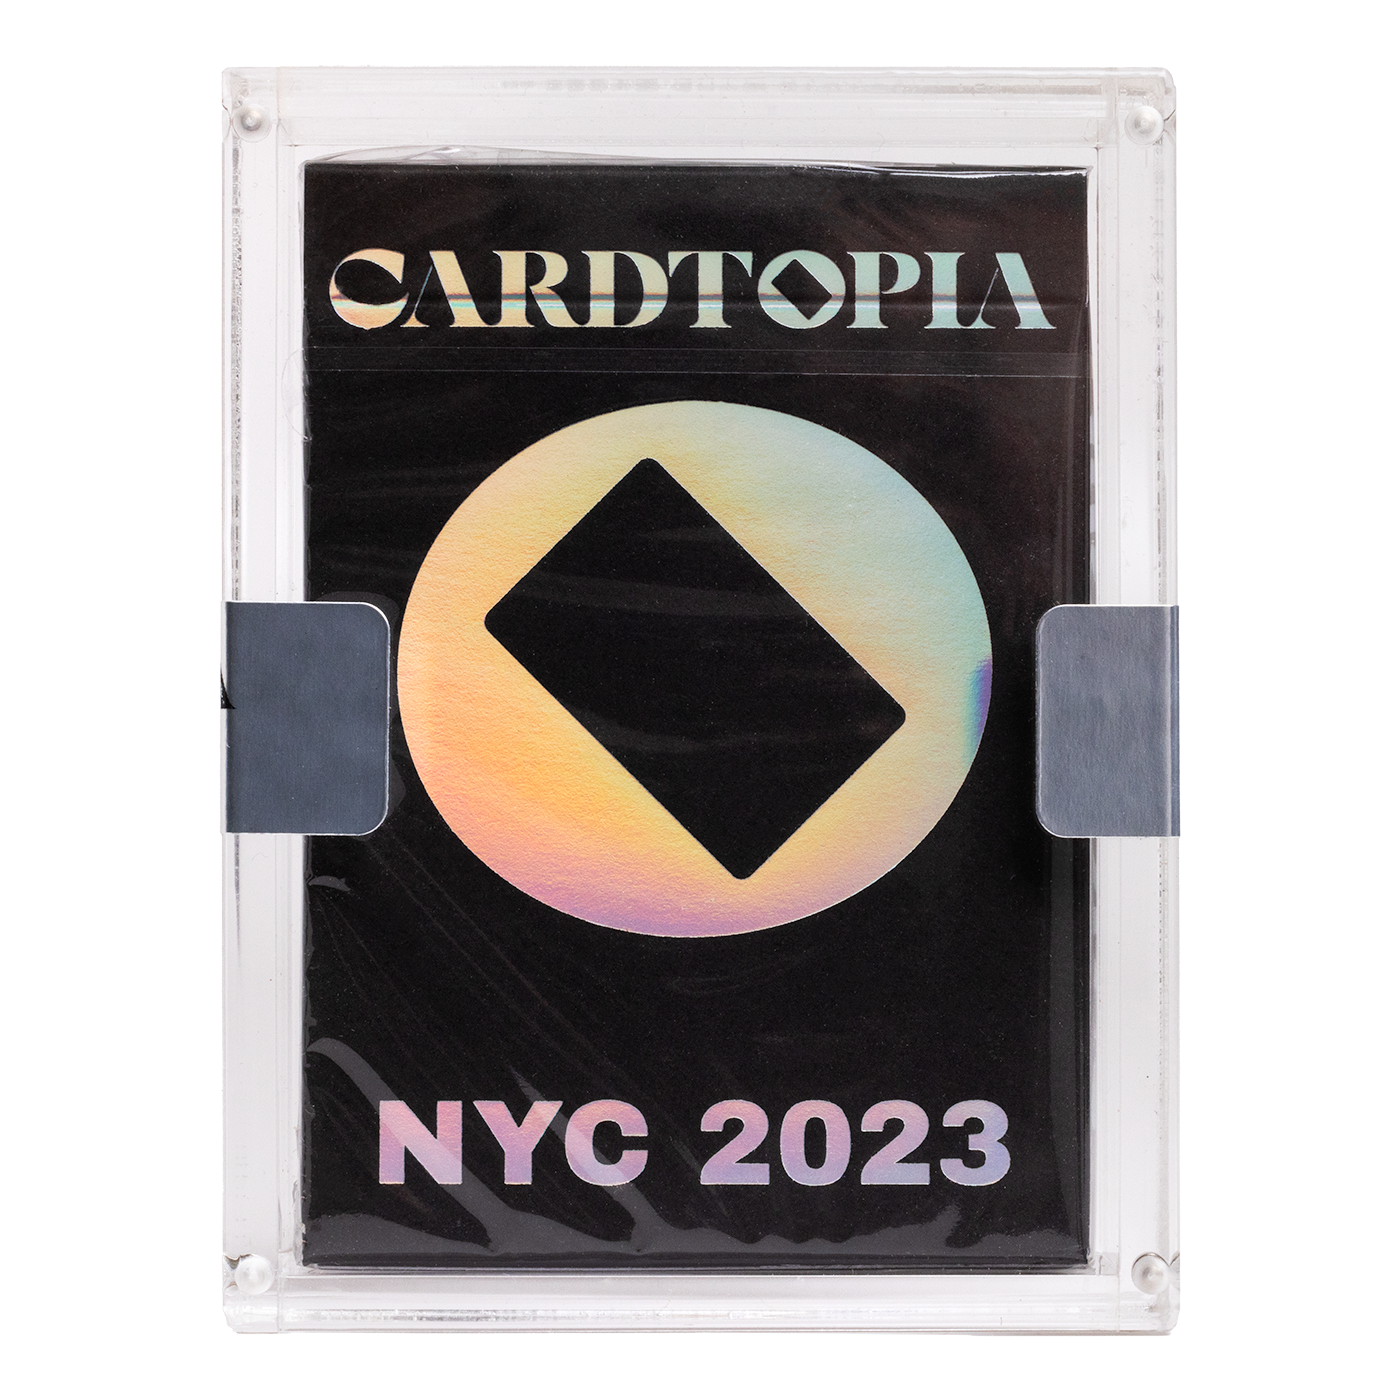 Cardtopia Event Deck 2023 (Carat Case)